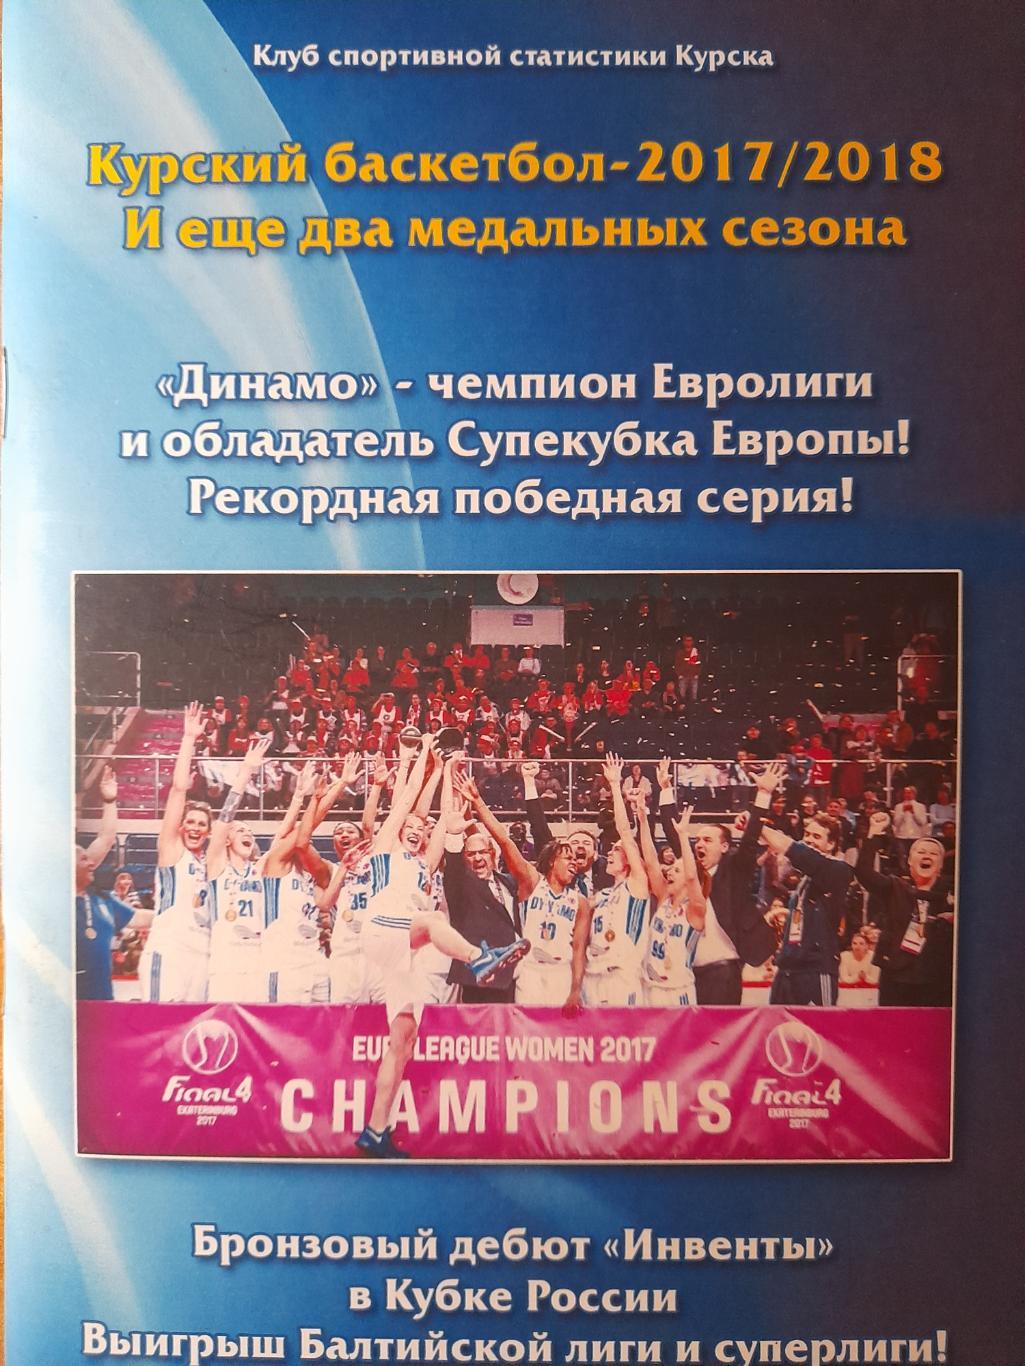 Курский баскетбол-2017/2018, календарь-справочник.